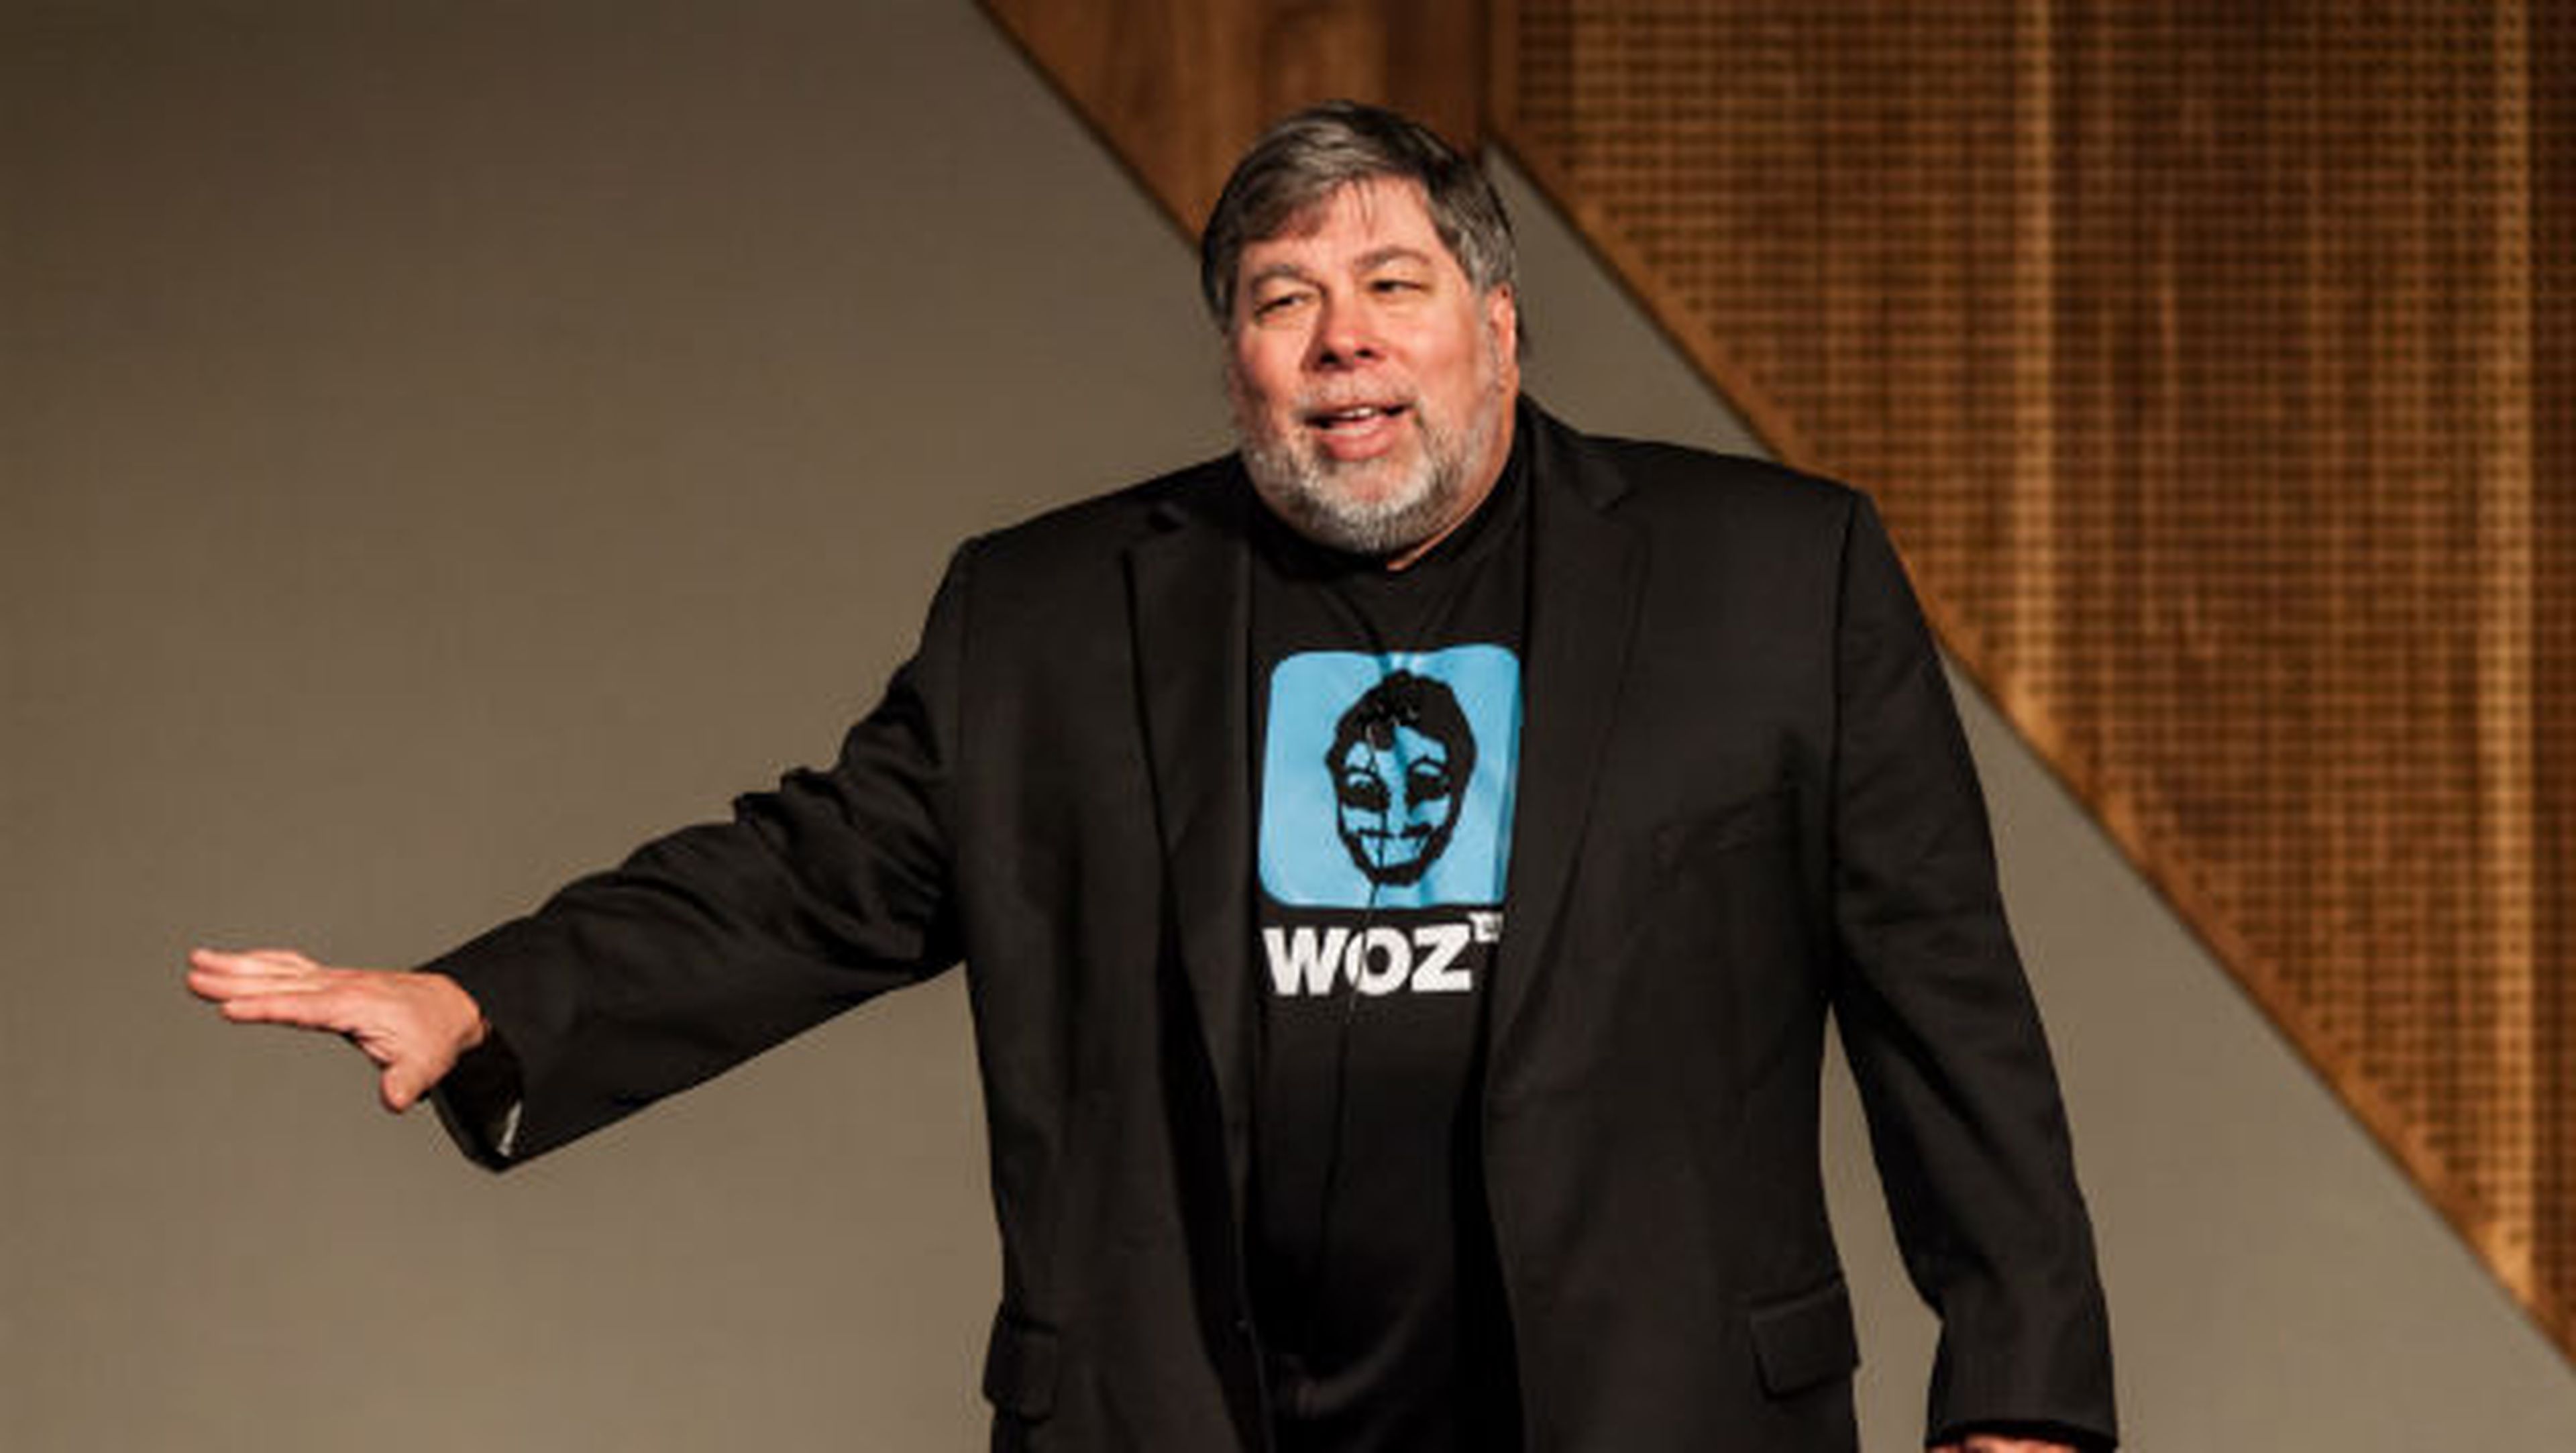 Steve Wozniak, fundador de Apple junto a Steve Jobs, habla sobre el futuro de la compañía.